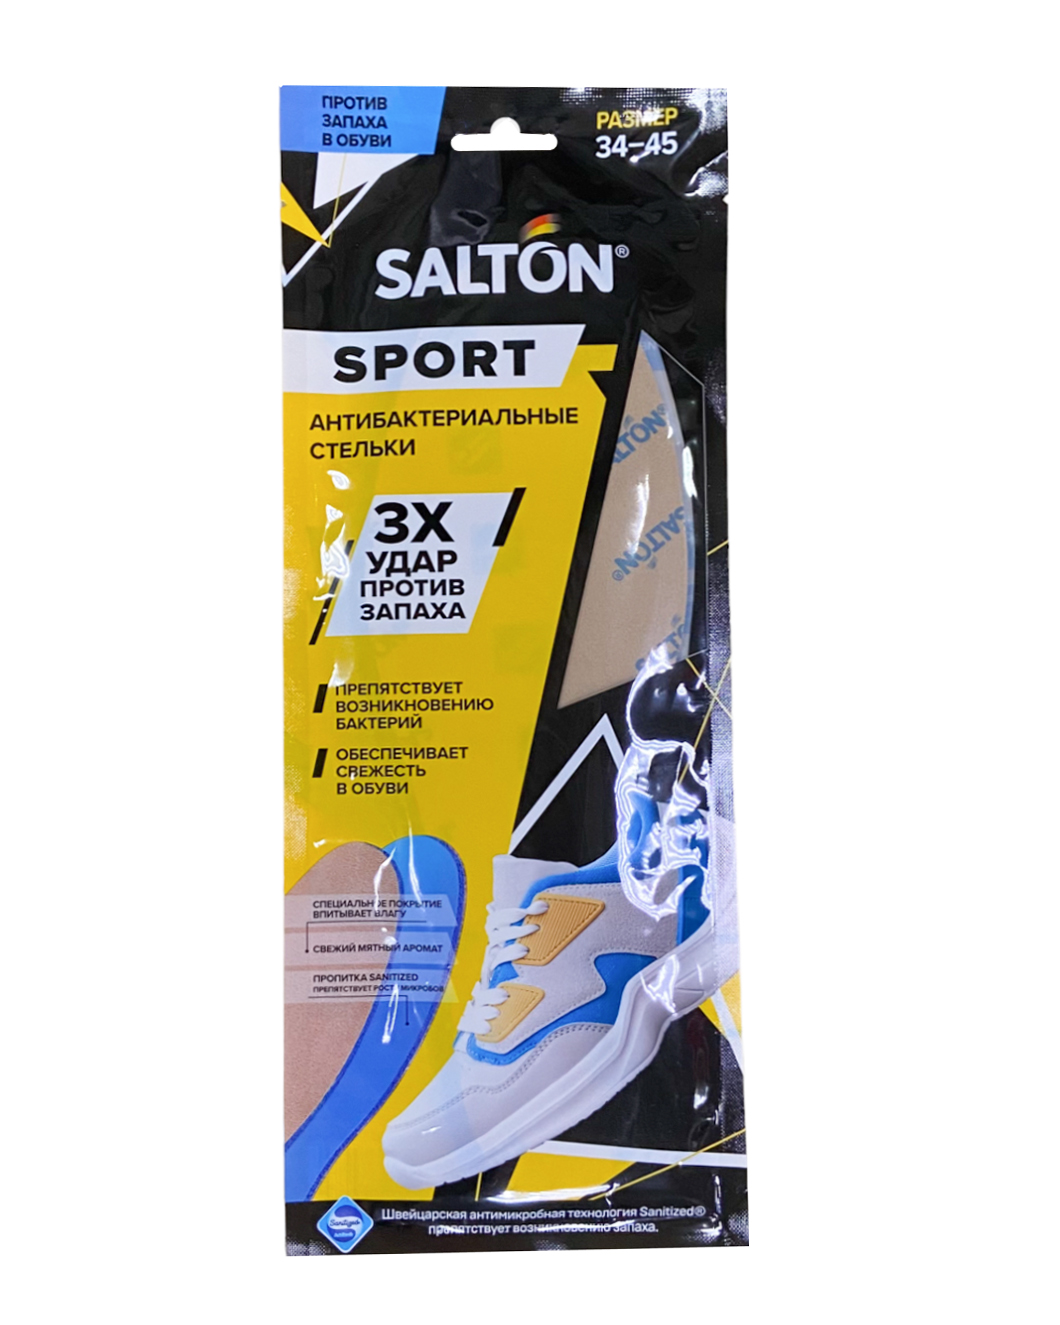 Стельки Salton Sport антибактериальные против запаха - фото 1